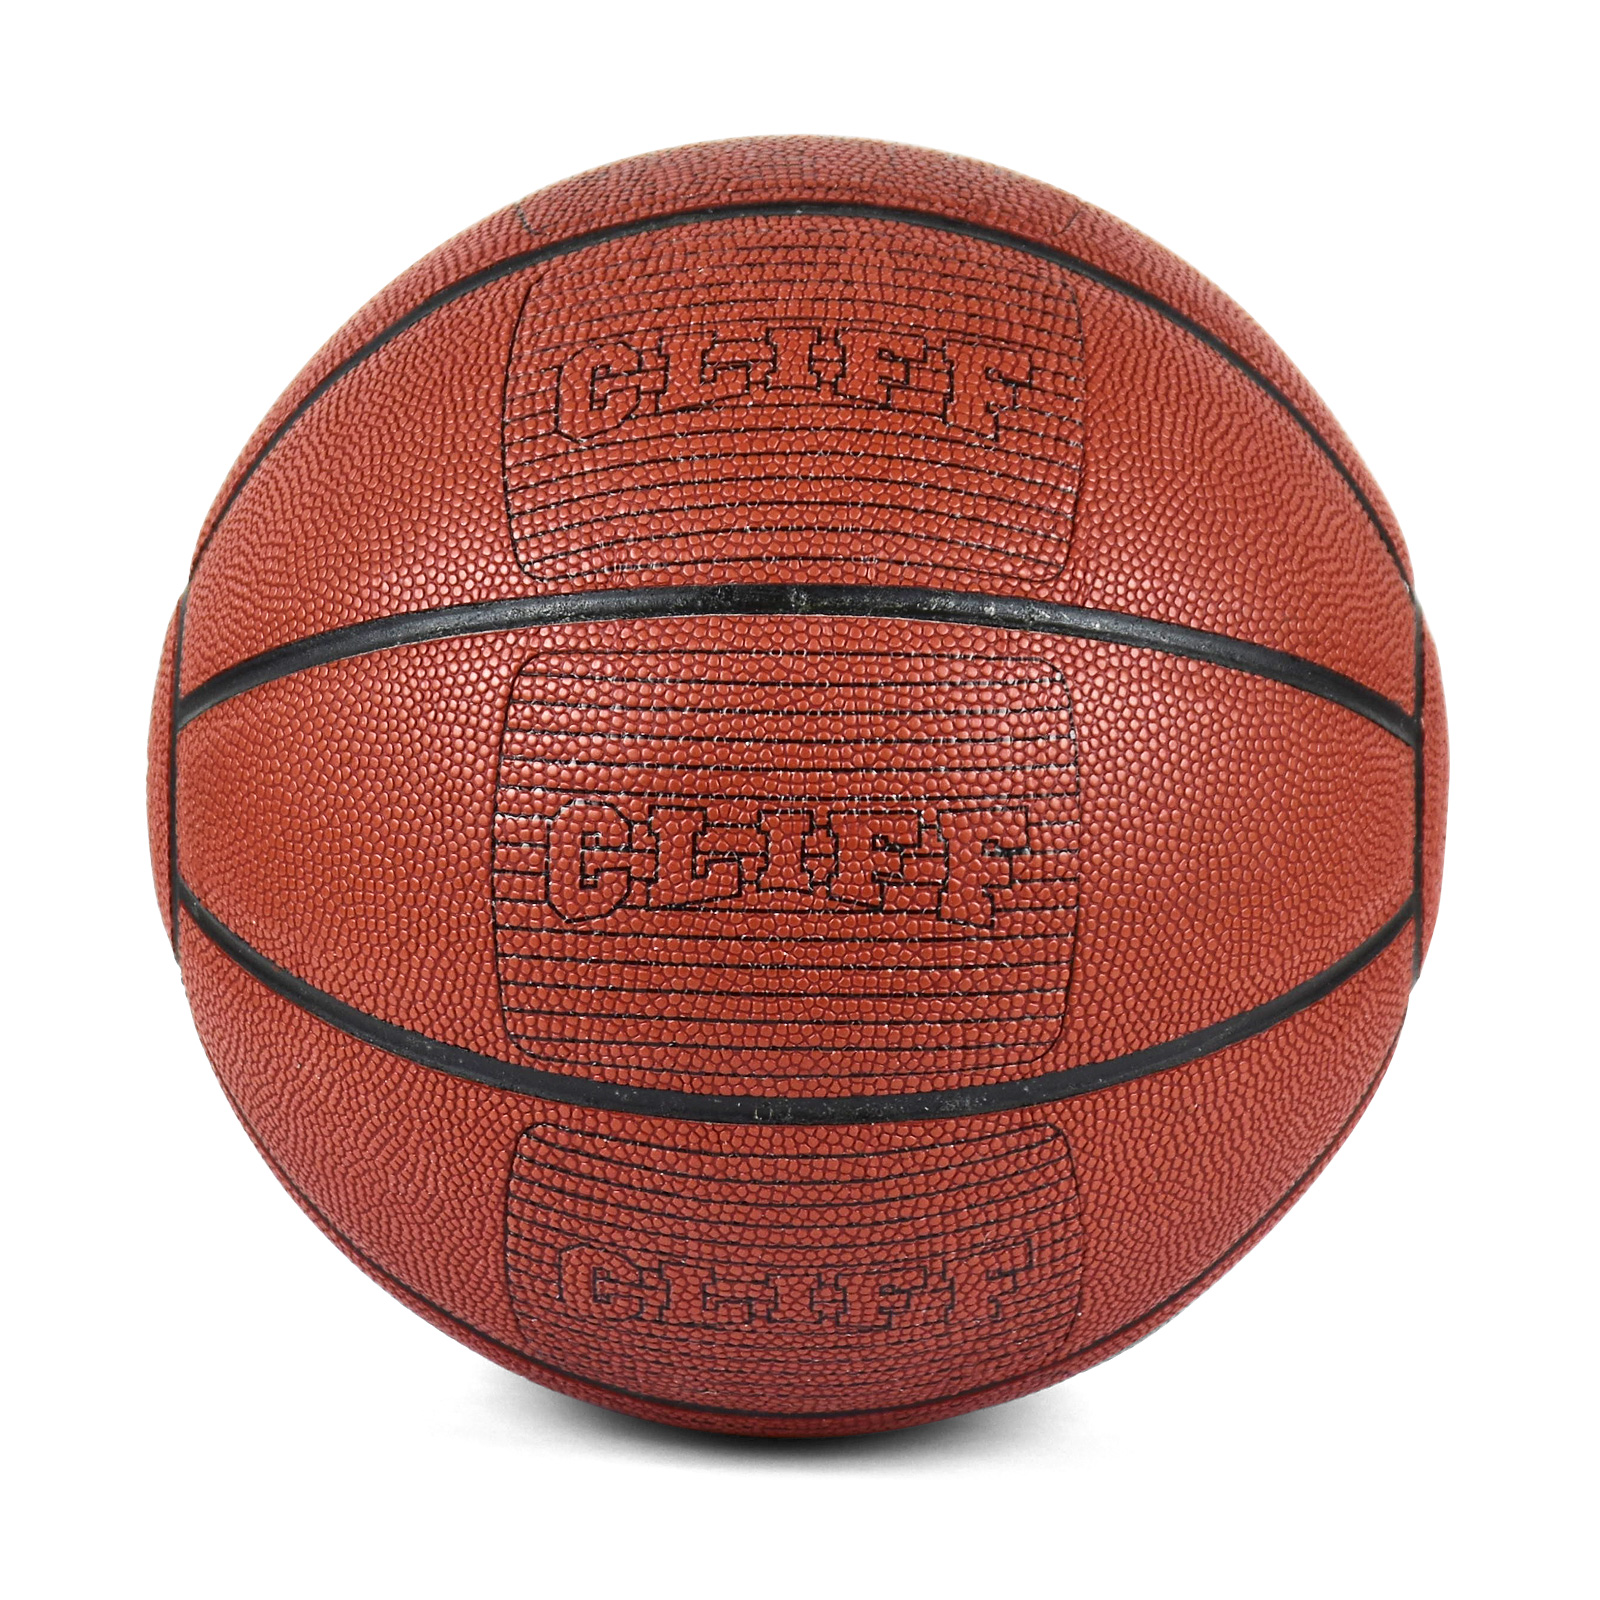 Мяч баскетбольный CLIFF 7, CSU 1203, PU